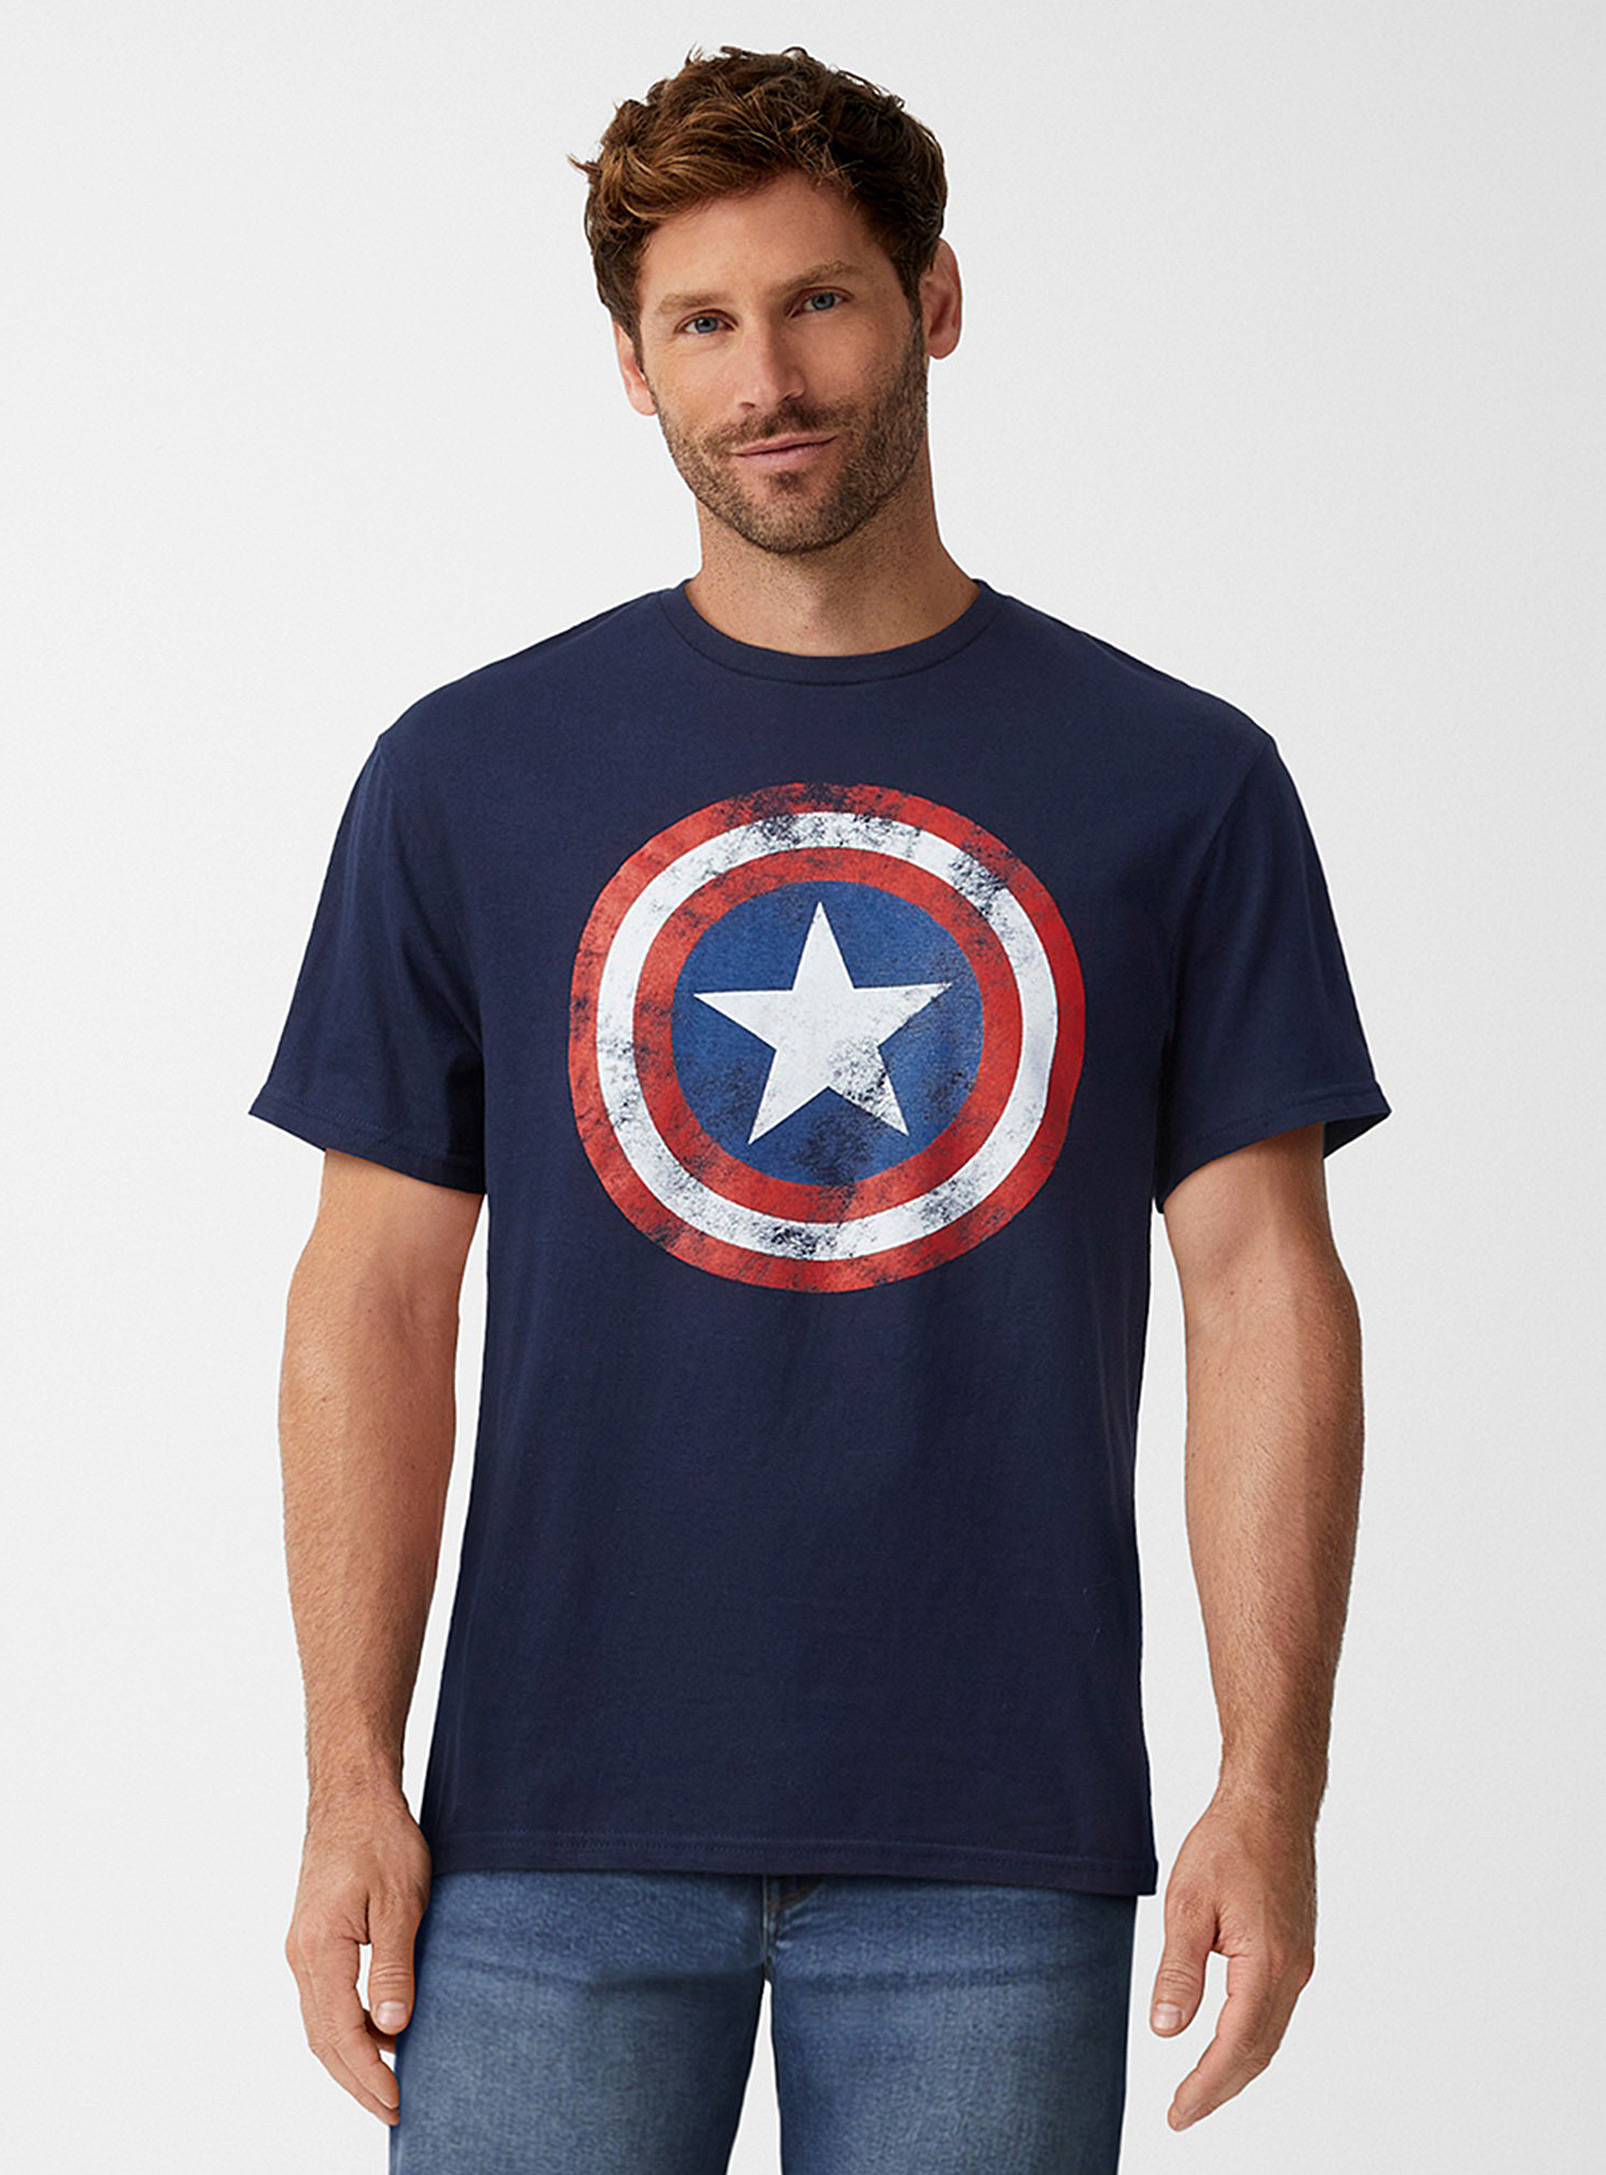 Le 31 - t-shirt Capitaine America vintage